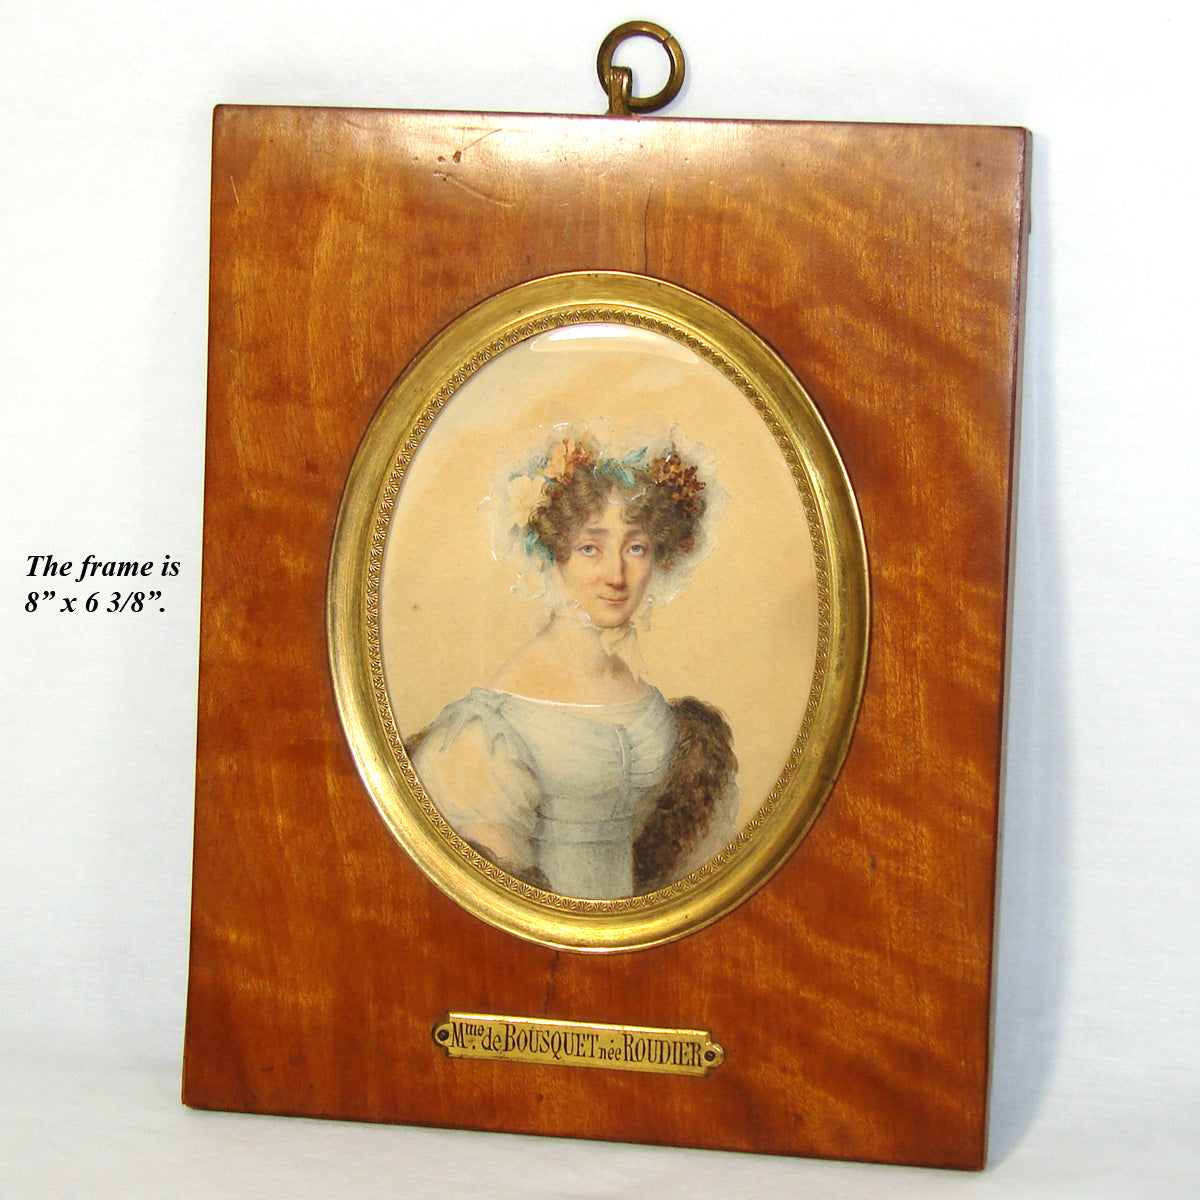 Antique French Portrait Miniature, Gouache on Card: "Mme de Bousquet nee Roudier"